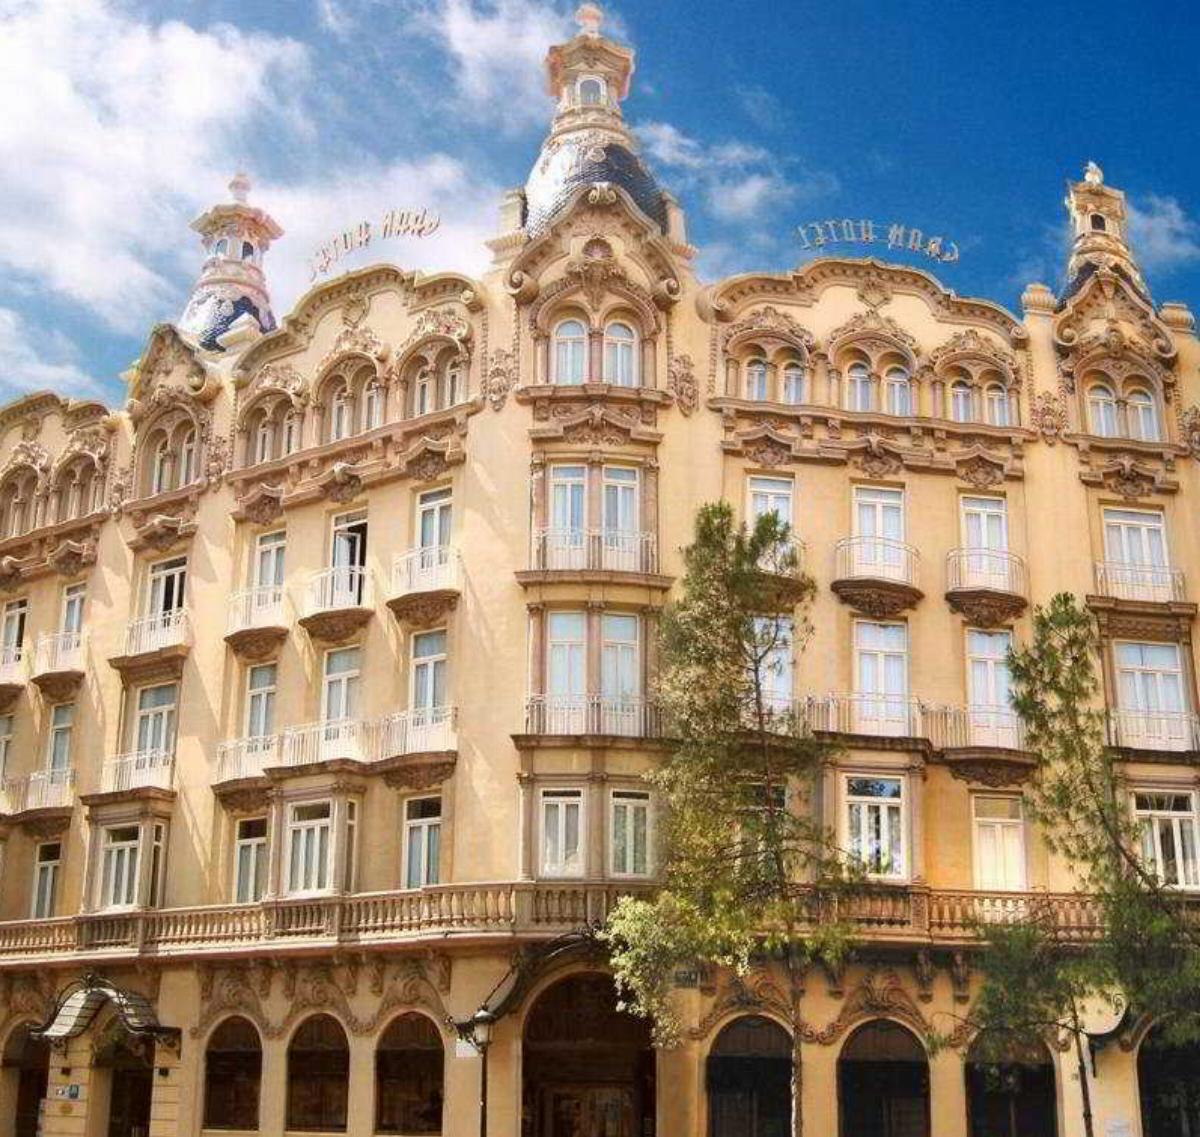 Gran Hotel Albacete Hotel Albacete Spain